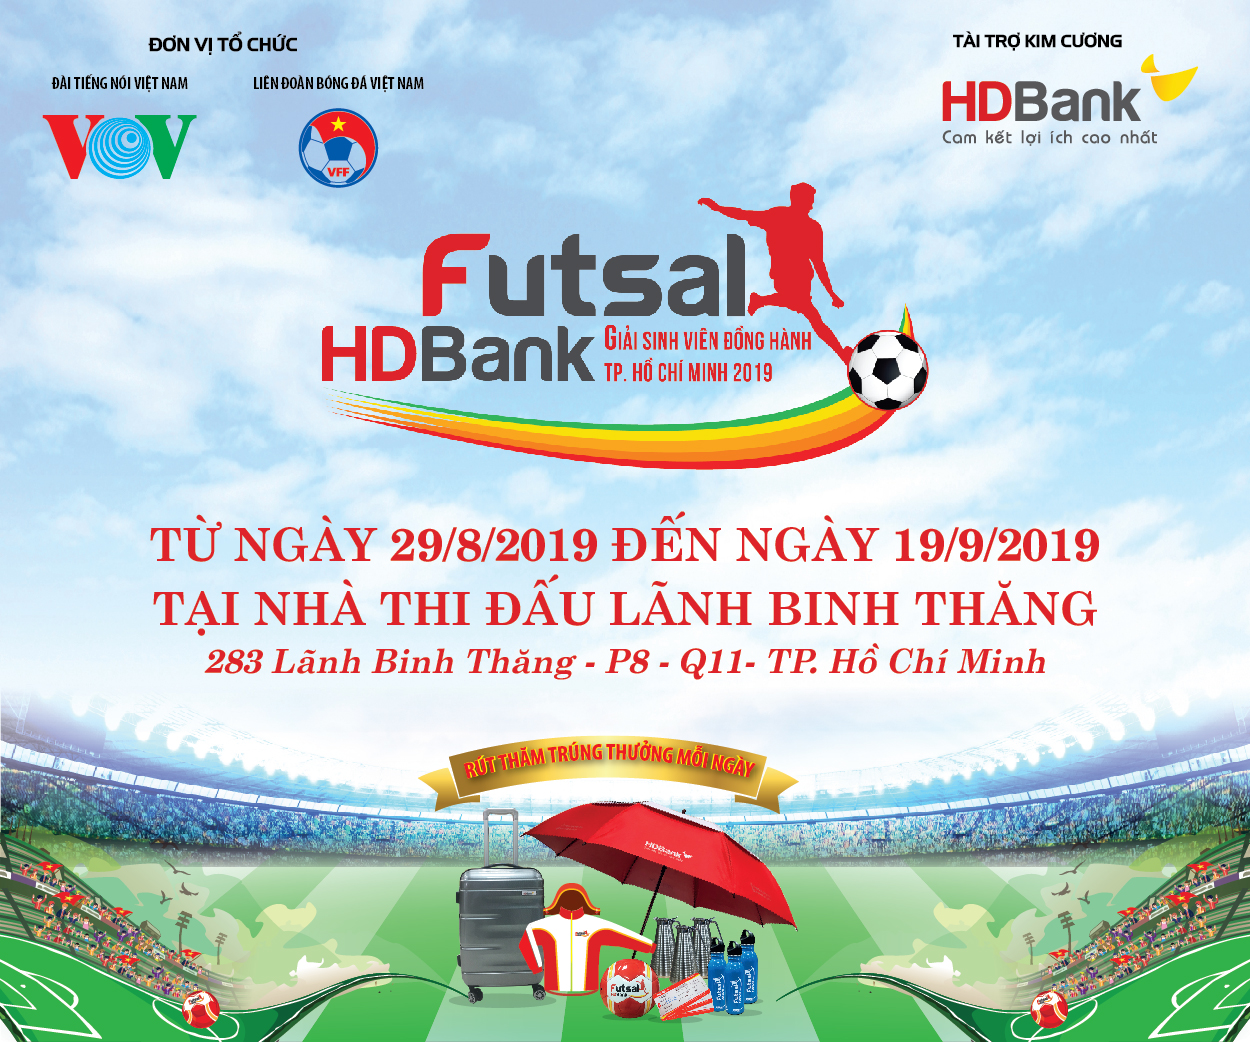 Lịch thi đấu giải Futsal HDBank sinh viên đồng hành Tp.Hồ Chí Minh 2019